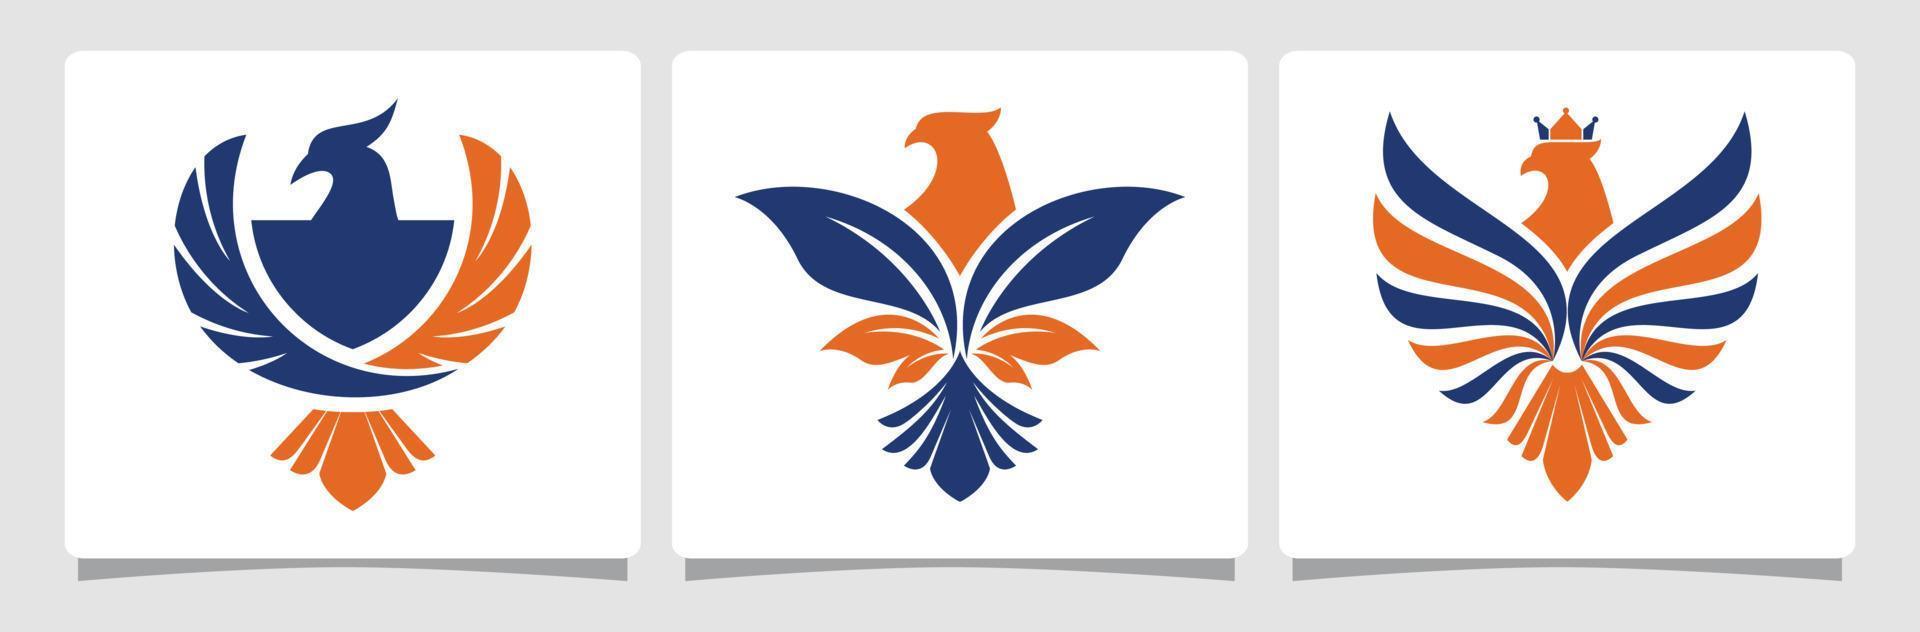 einstellen Adler Logo Vorlage Design Inspiration vektor